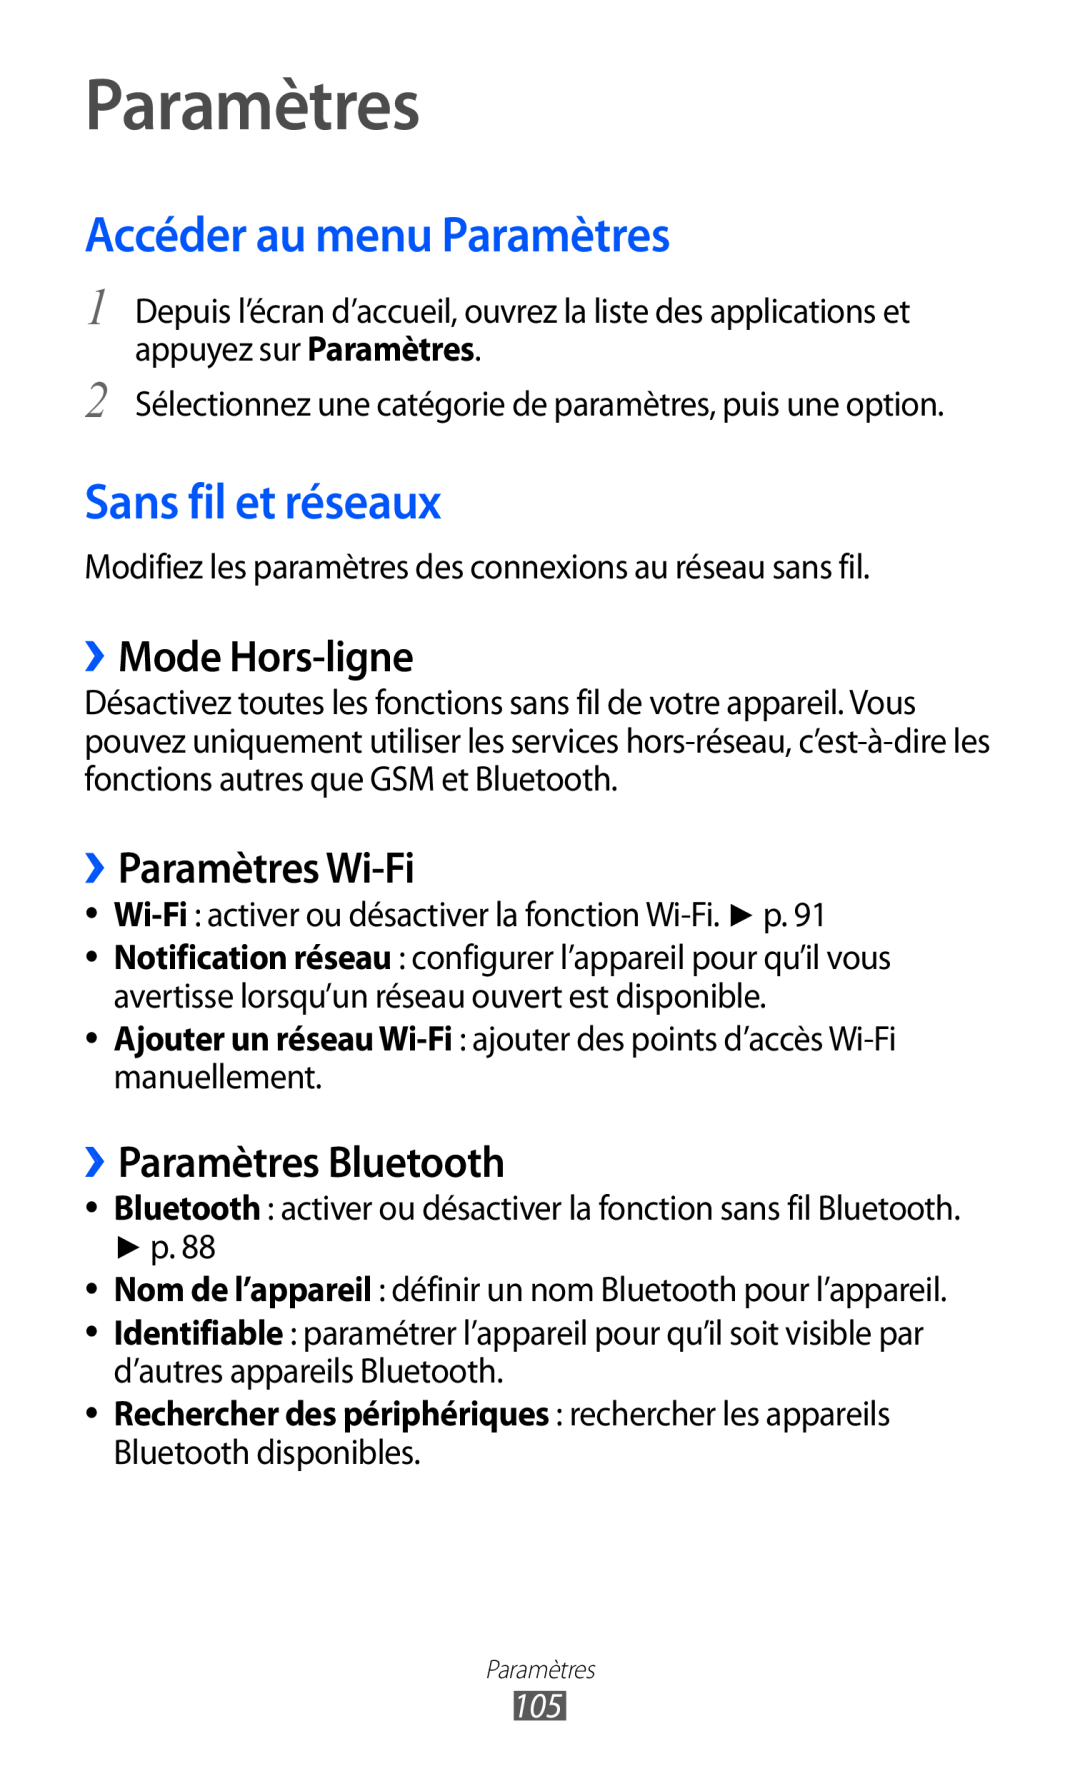 Samsung GT-B5510CAANRJ manual Accéder au menu Paramètres, Sans fil et réseaux, ››Mode Hors-ligne, ››Paramètres Wi-Fi 